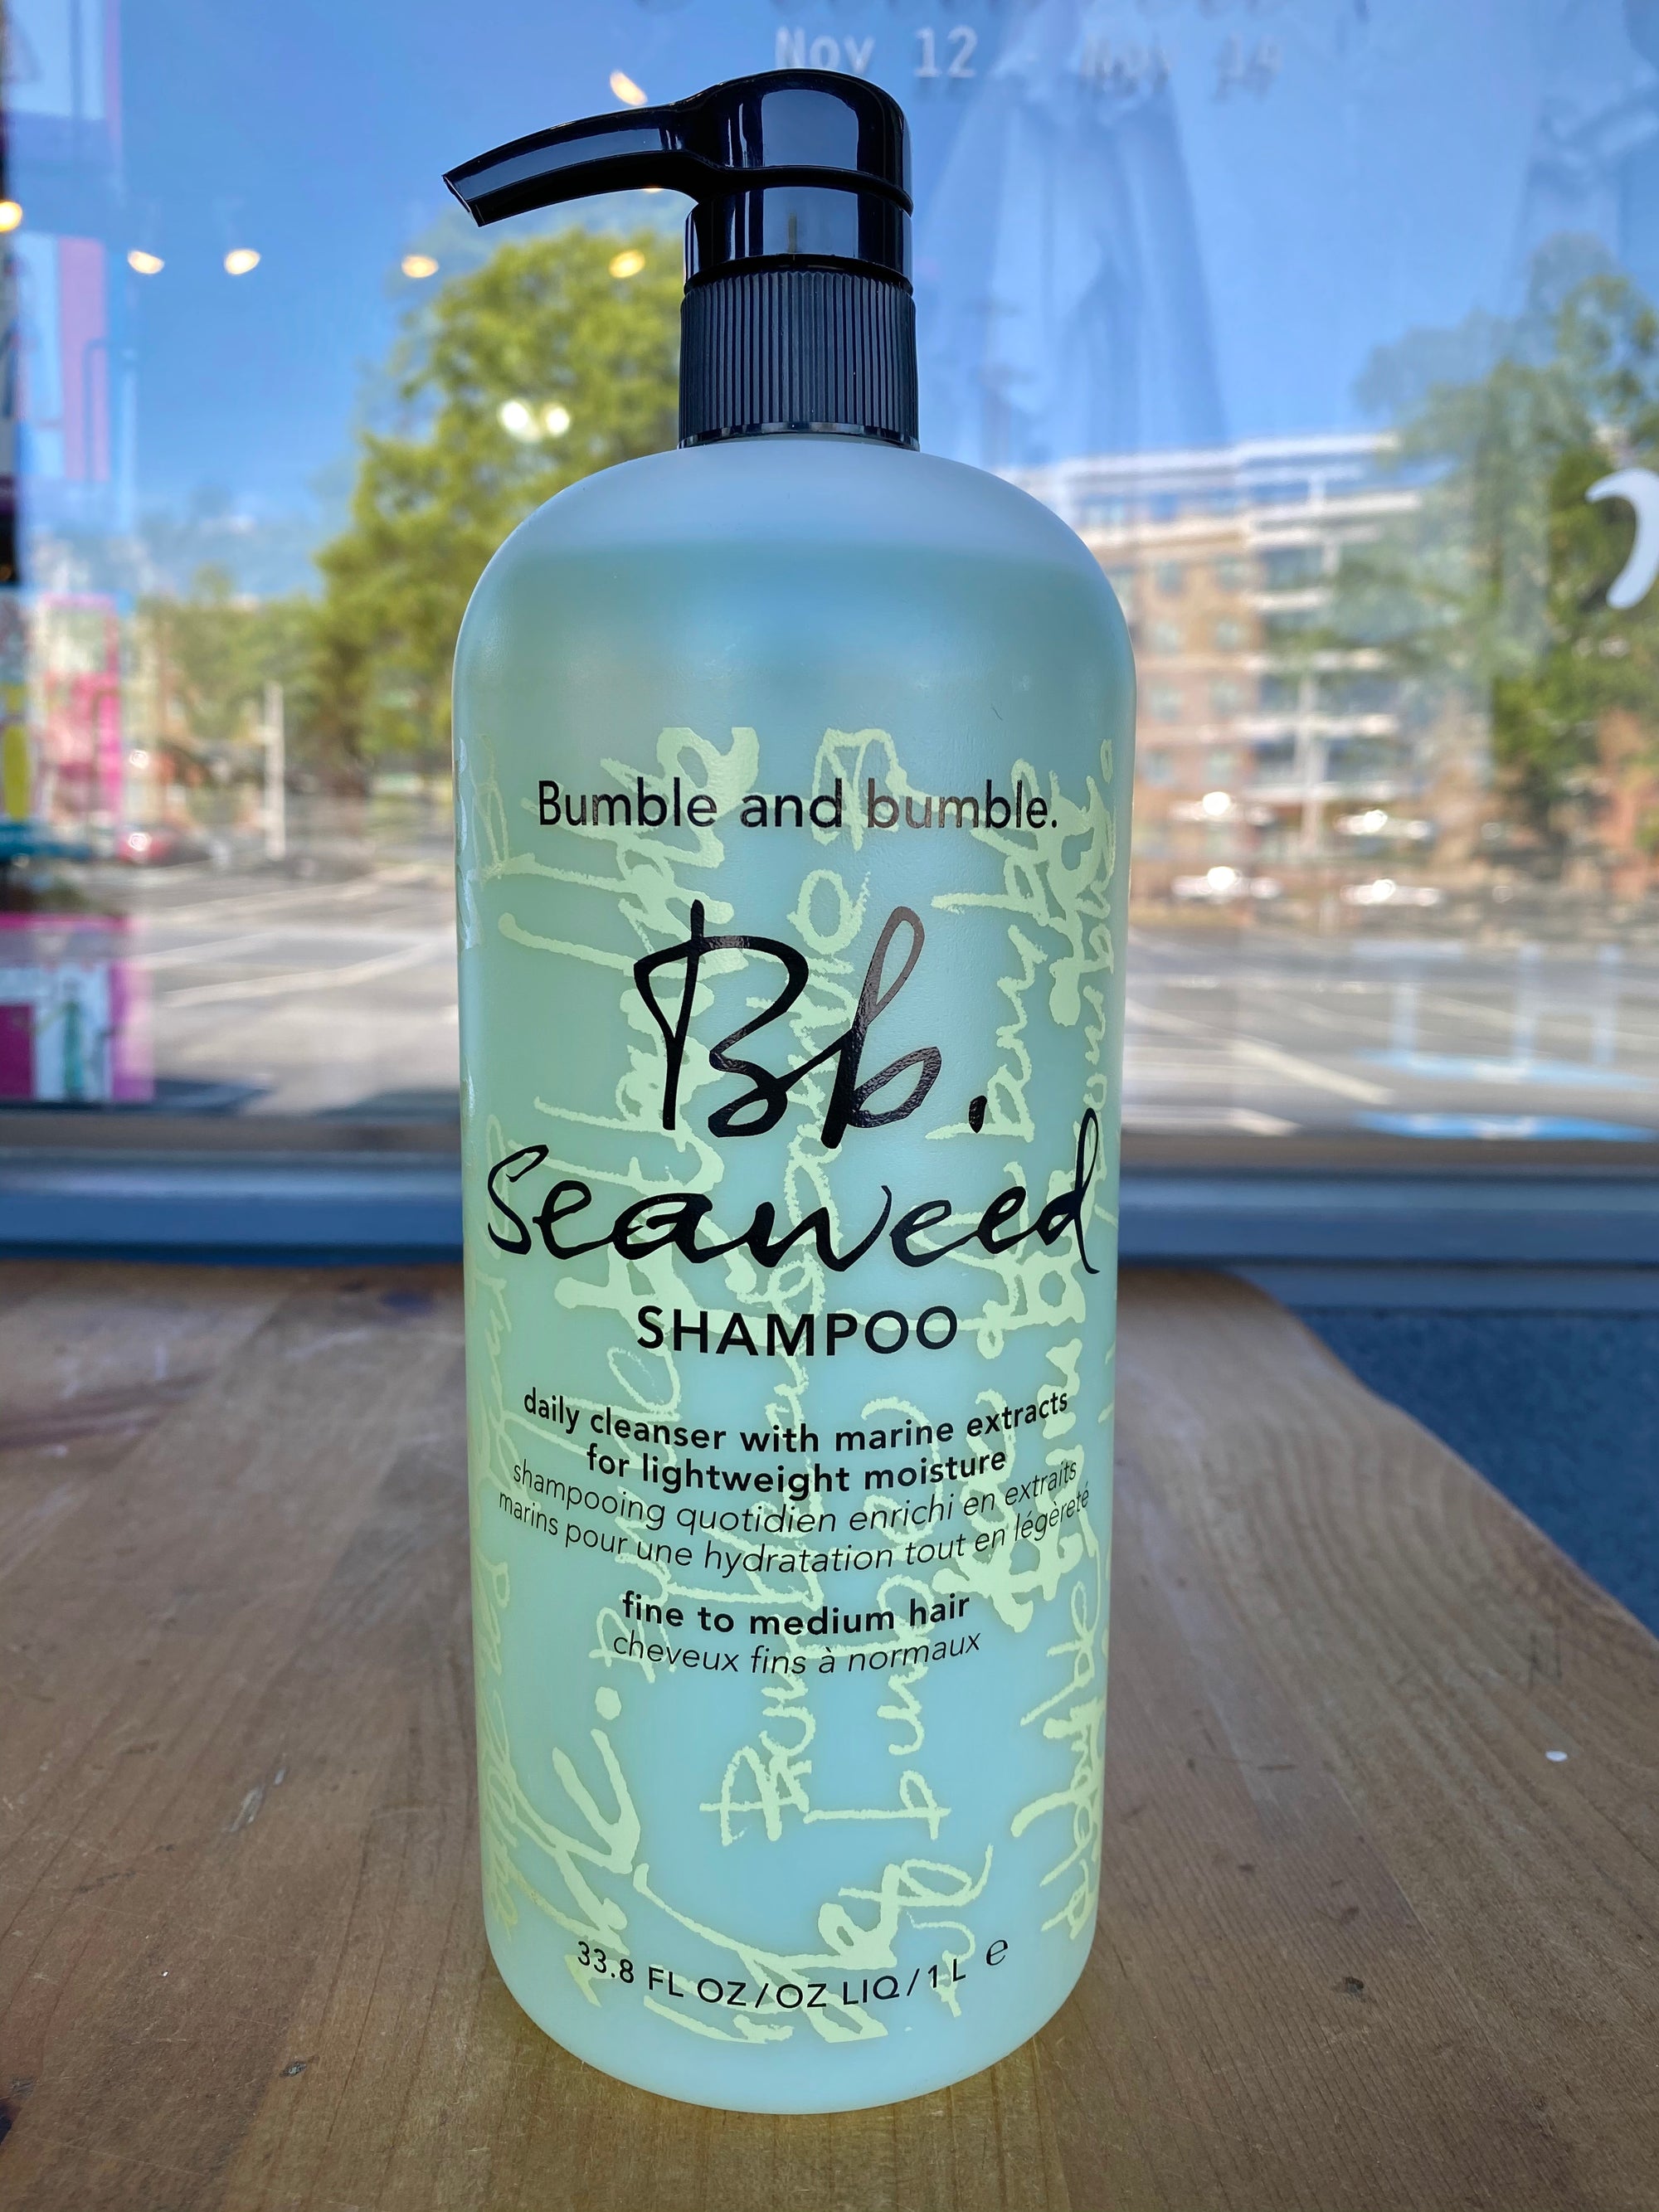 Bb. Seaweed Shampoo